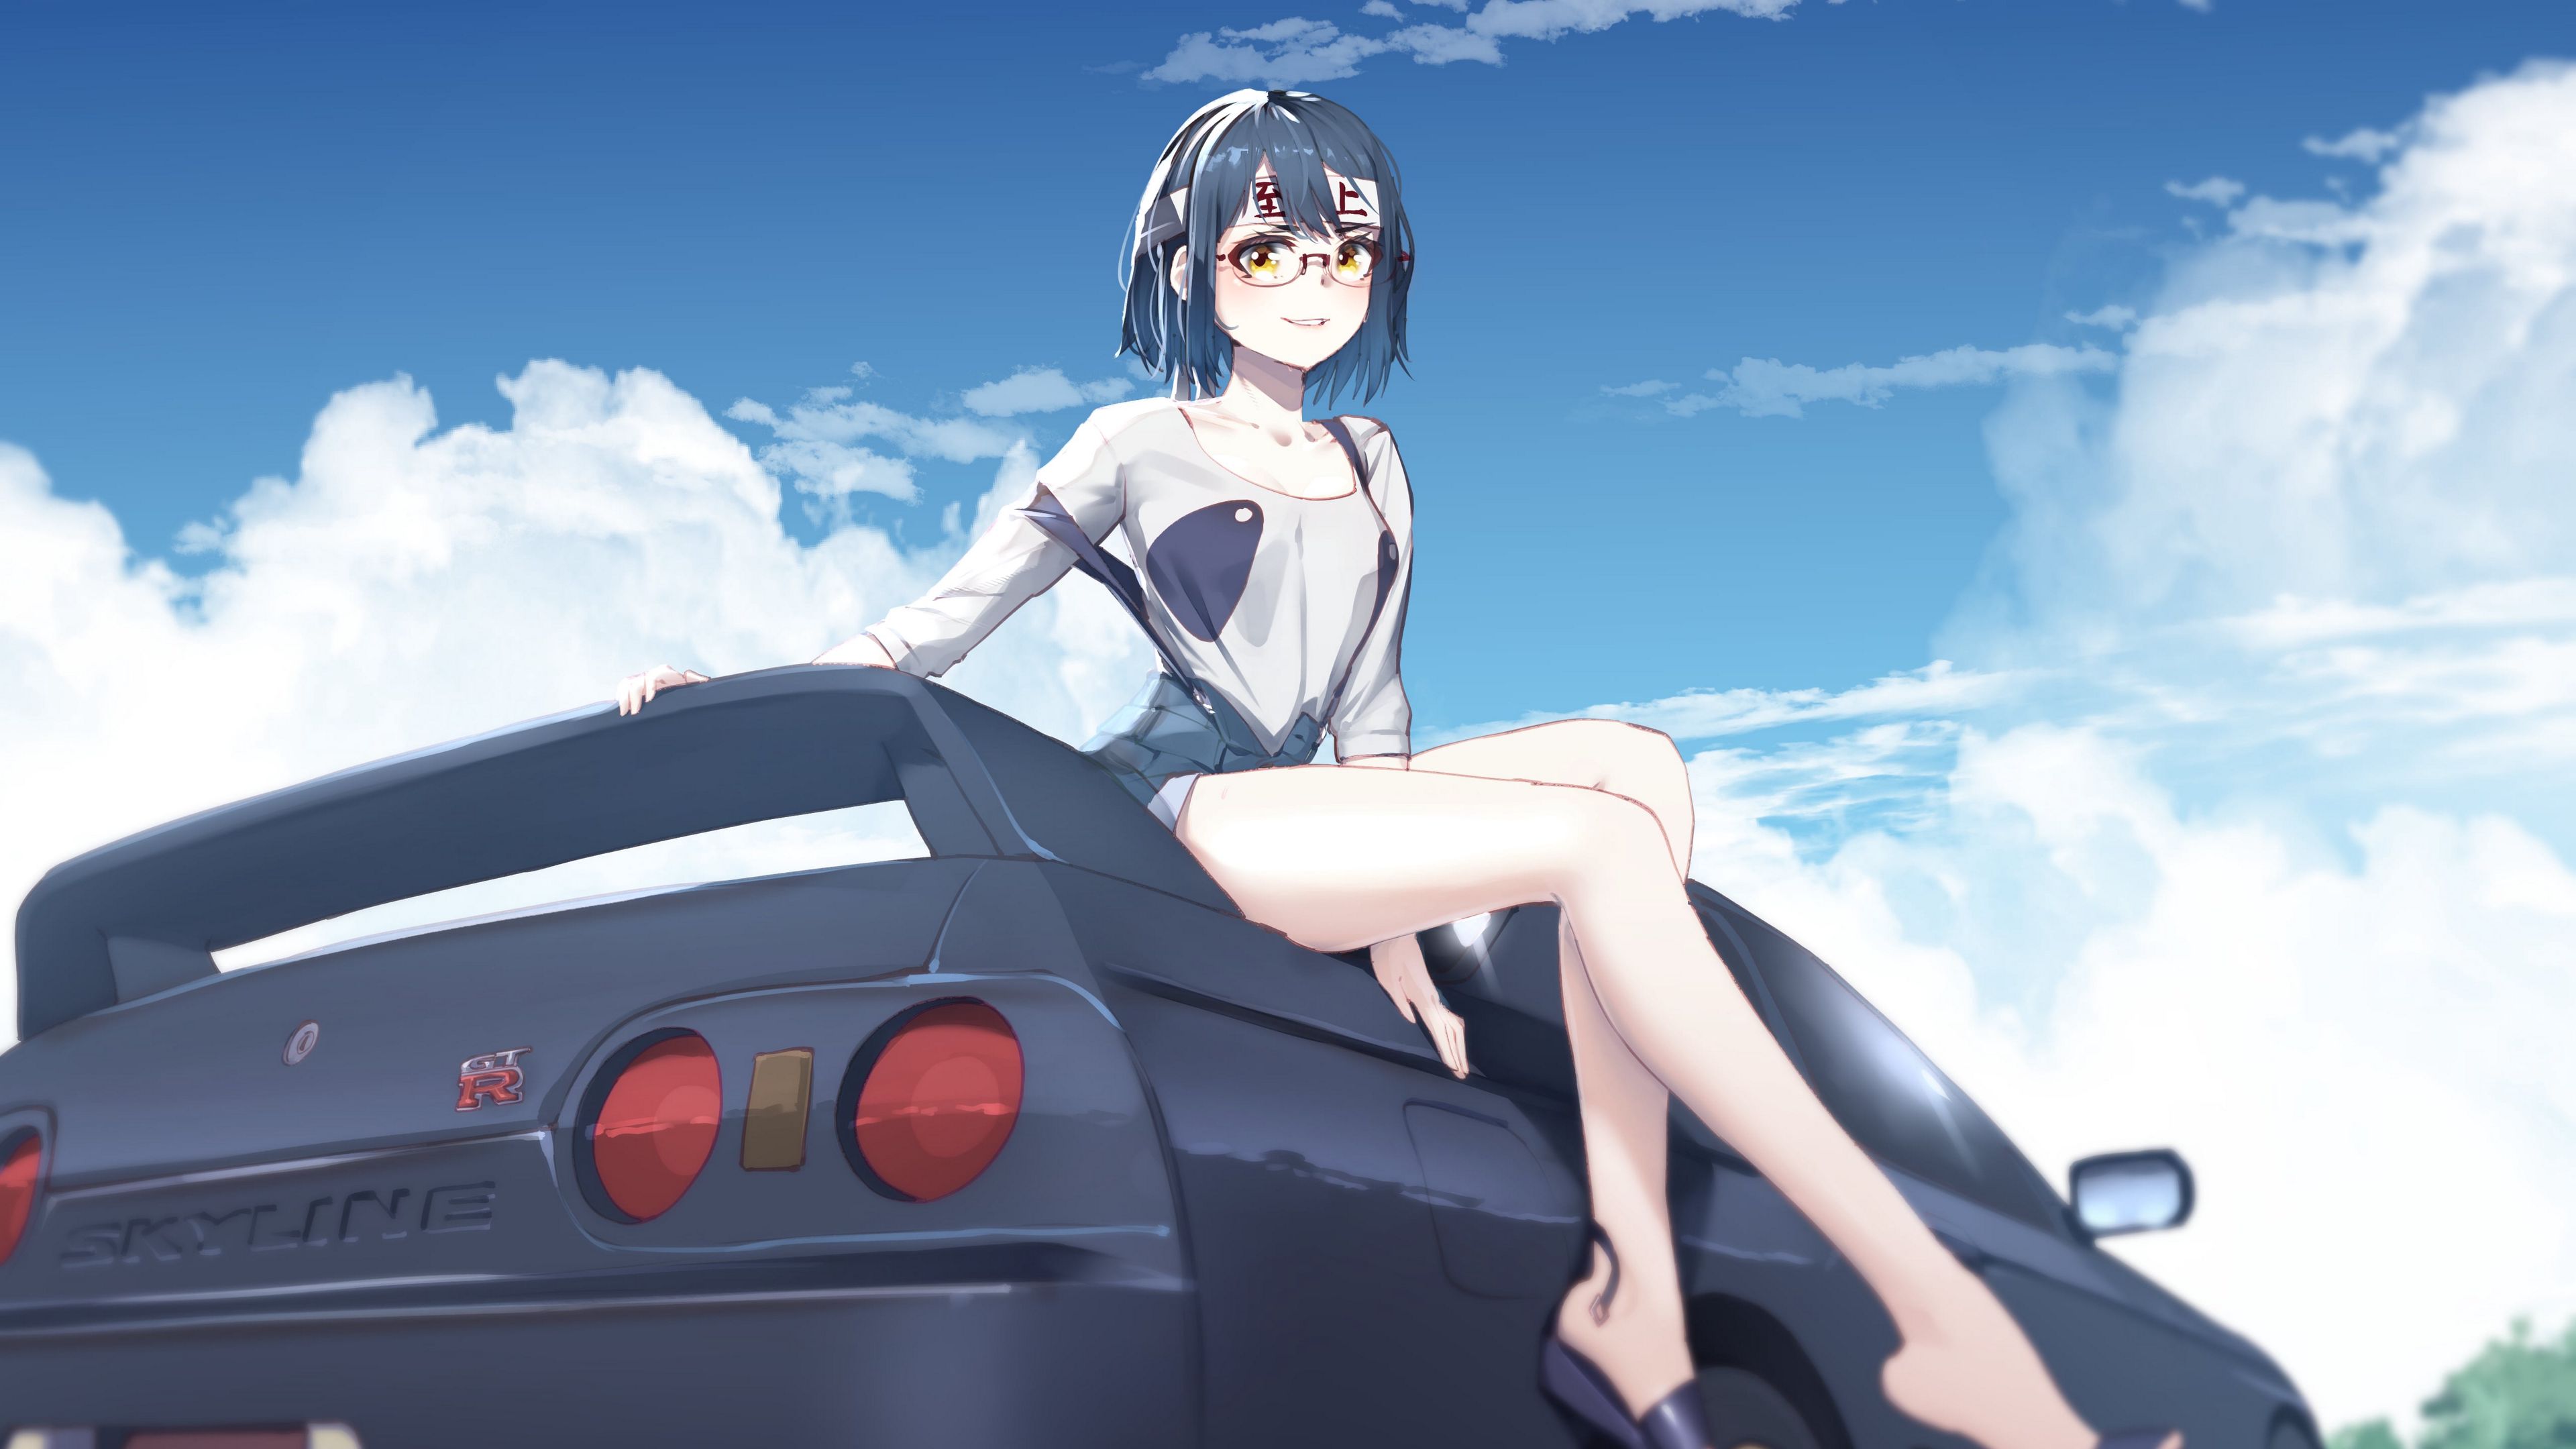 Bạn là người yêu thích Anime và đam mê xe hơi? Hãy để những hình nền anime về xe hơi đầy màu sắc này làm cho màn hình điện thoại của bạn nổi bật hơn bao giờ hết. Những chiếc xe nam tính và đầy mạnh mẽ sẽ khiến bạn trở nên cuồng nhiệt hơn bao giờ hết. Nhấn vào để xem các lựa chọn.